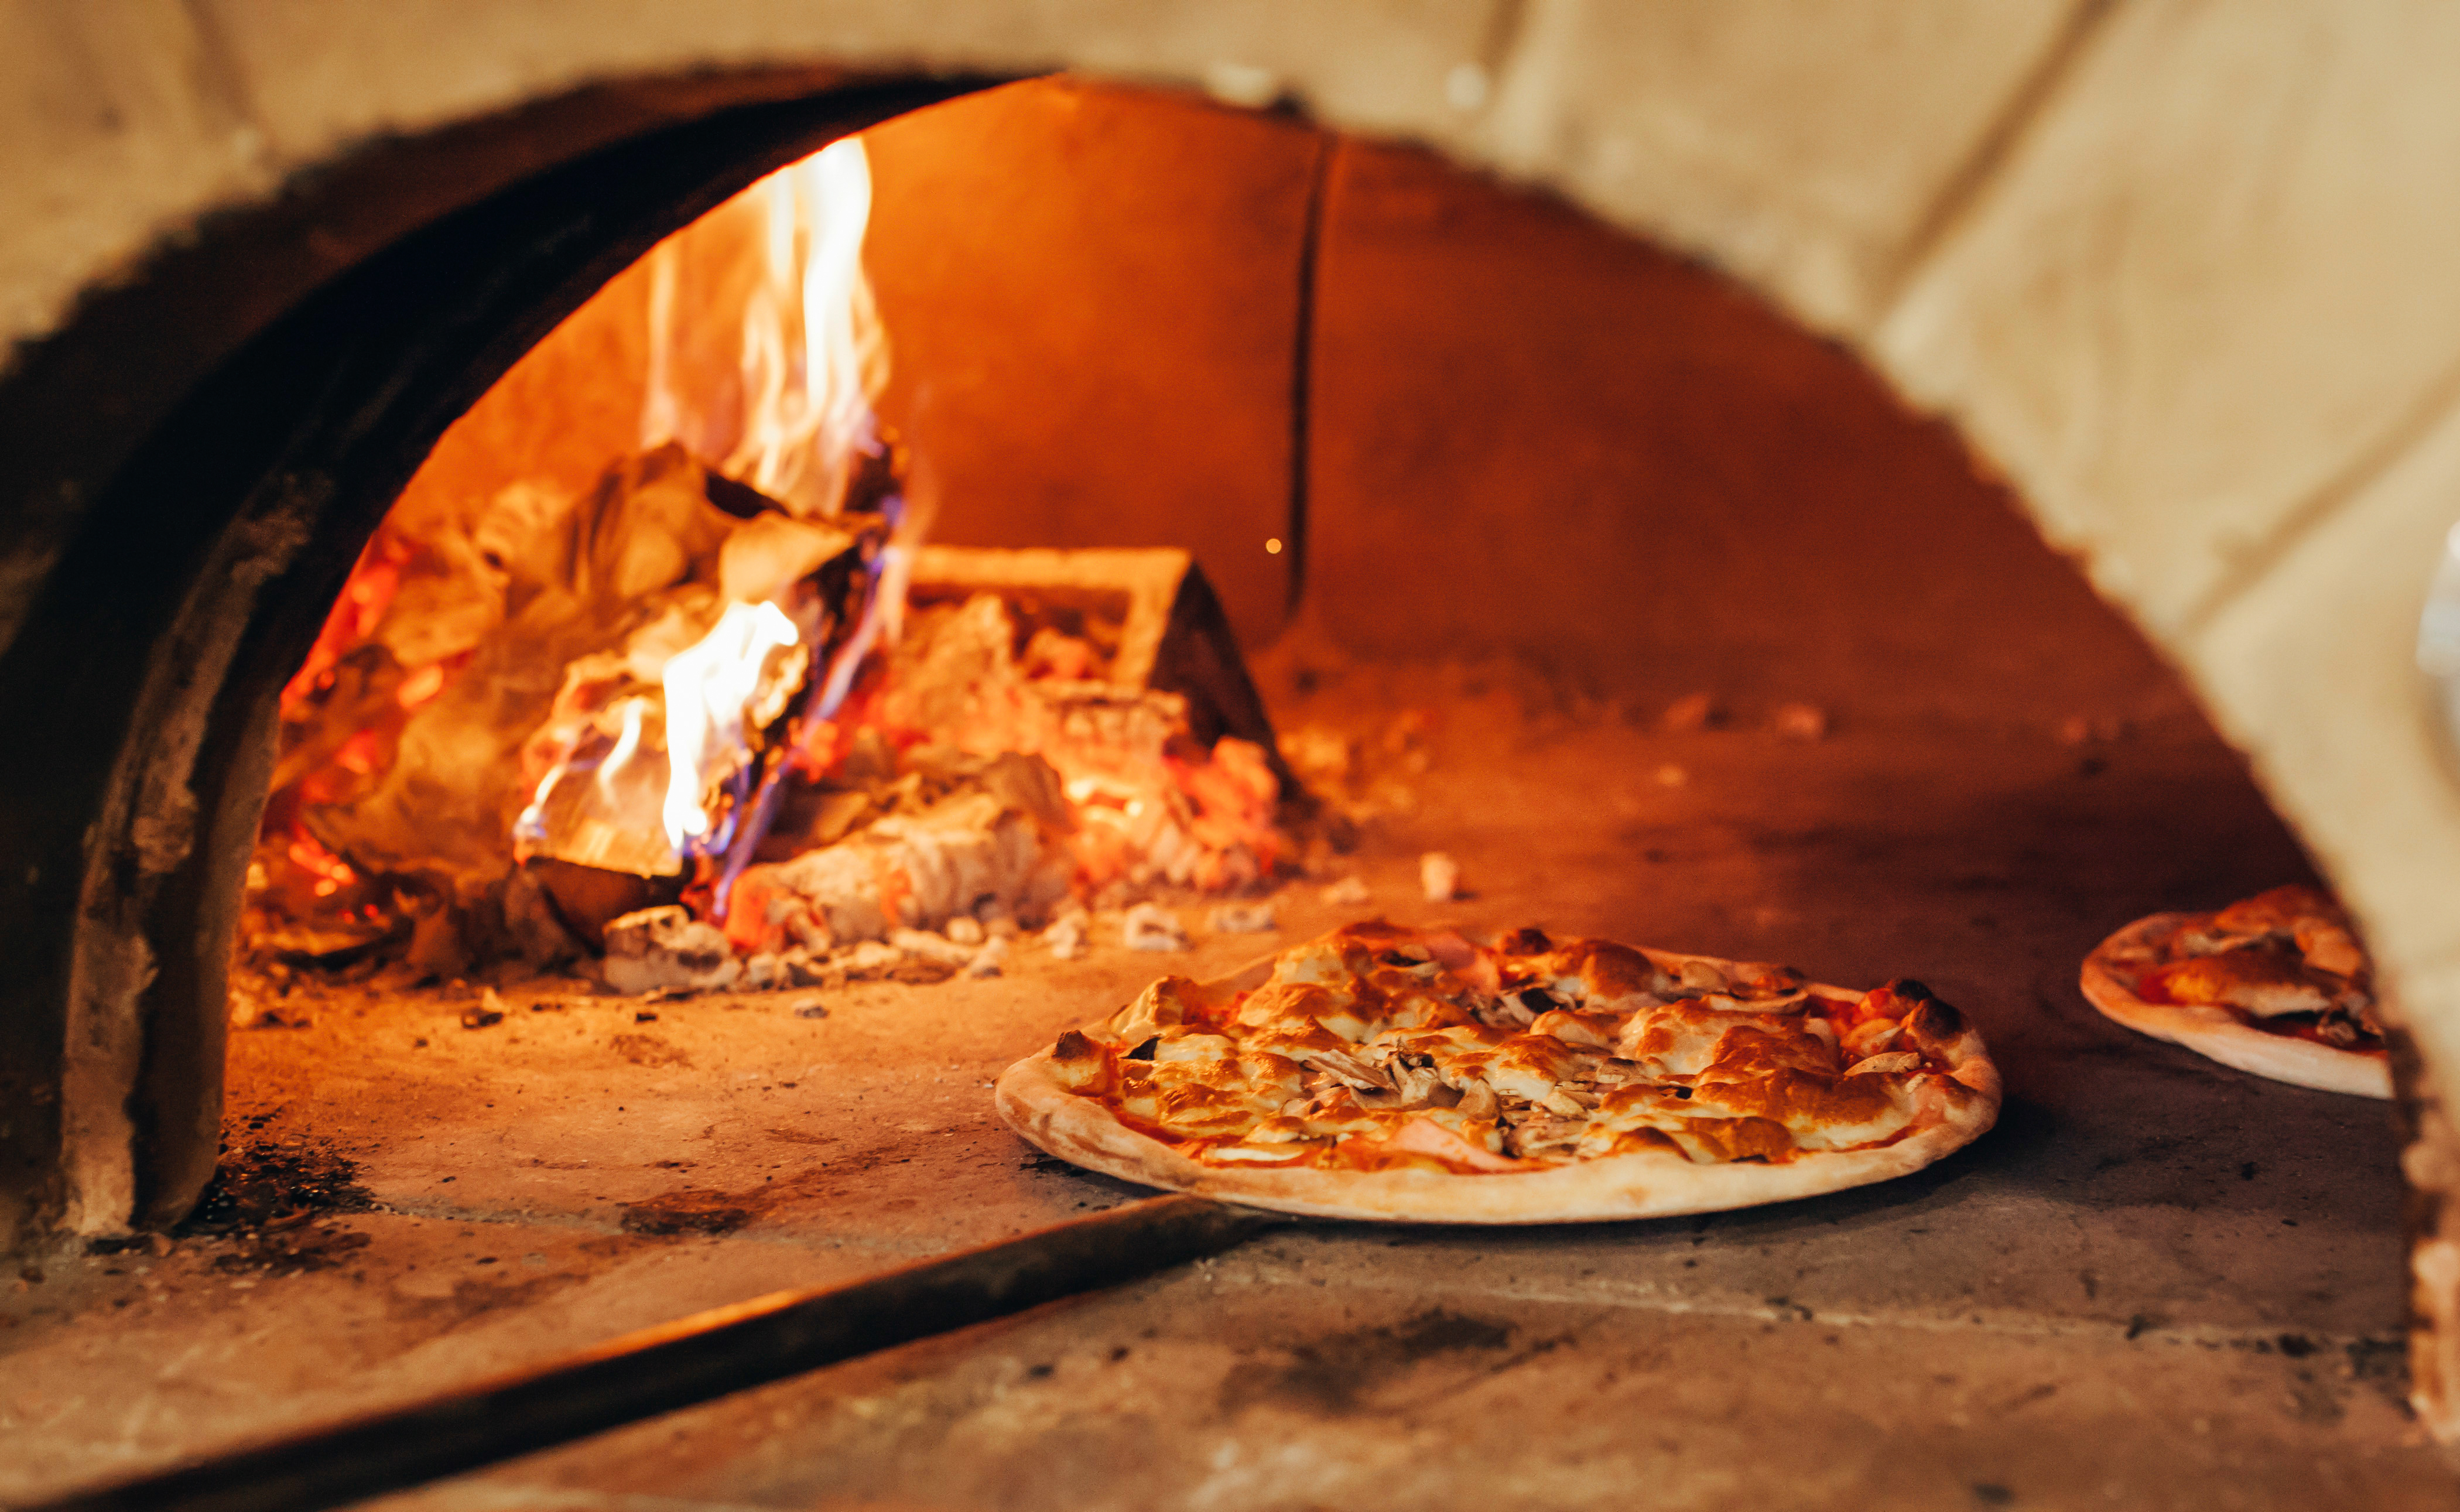 פיצה נאפת בתנור לבנים לכבוד יום הפיצה הבין לאומי